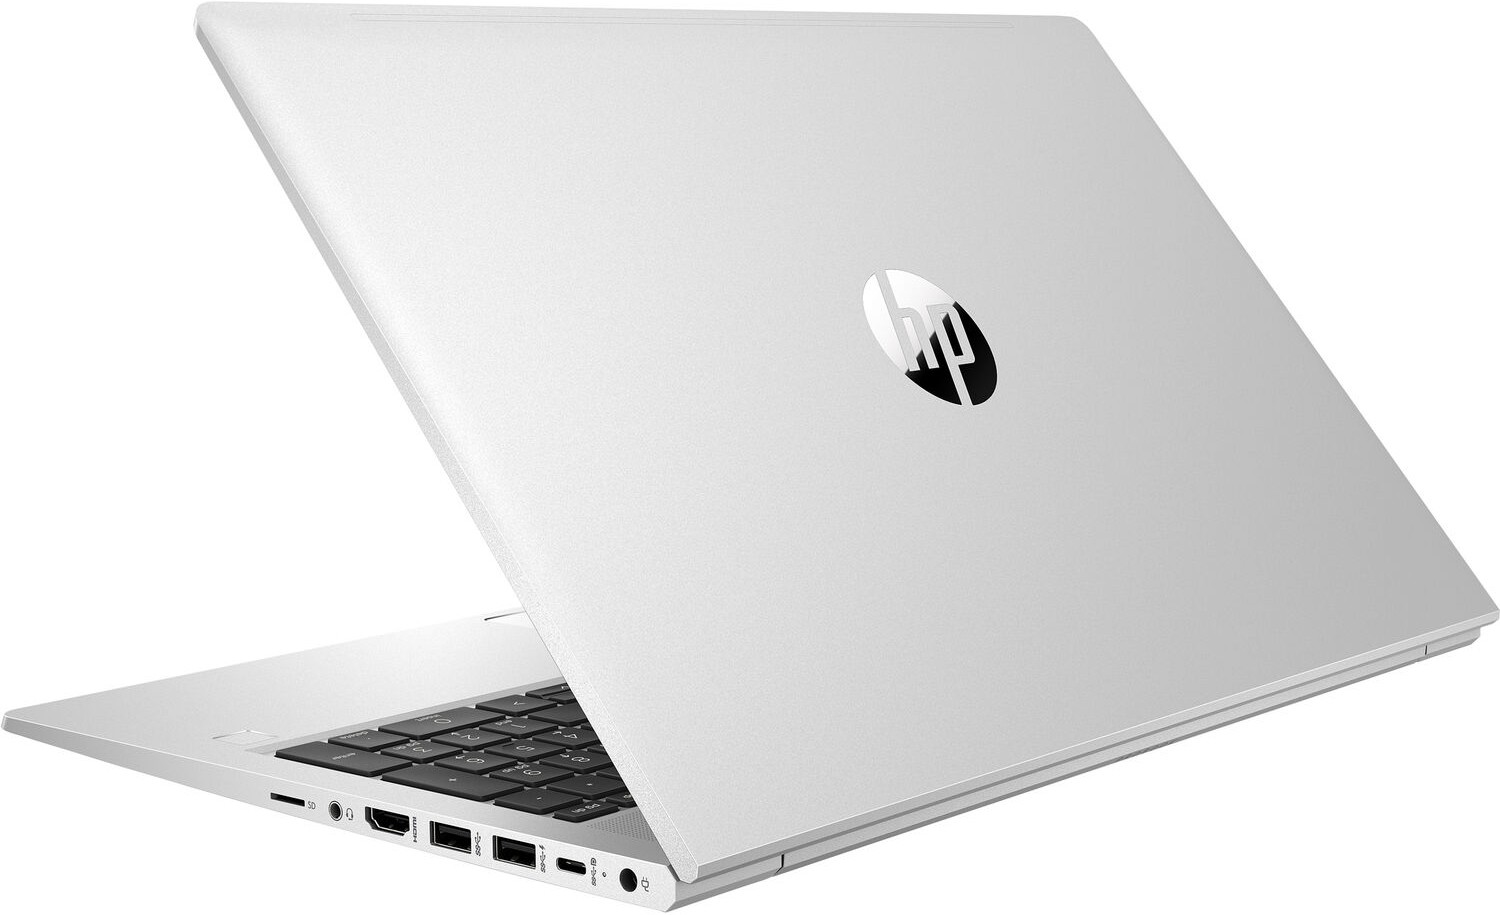 Ноутбук HP ProBook 450 G8 Core i7-1165G7 2.8GHz 15.6" FHD (1920x1080) AG,8Gb DDR4(1),512Gb SSD,45Wh LL,Backlit,FPR,1.8kg,1y,Silver,Dos-39434